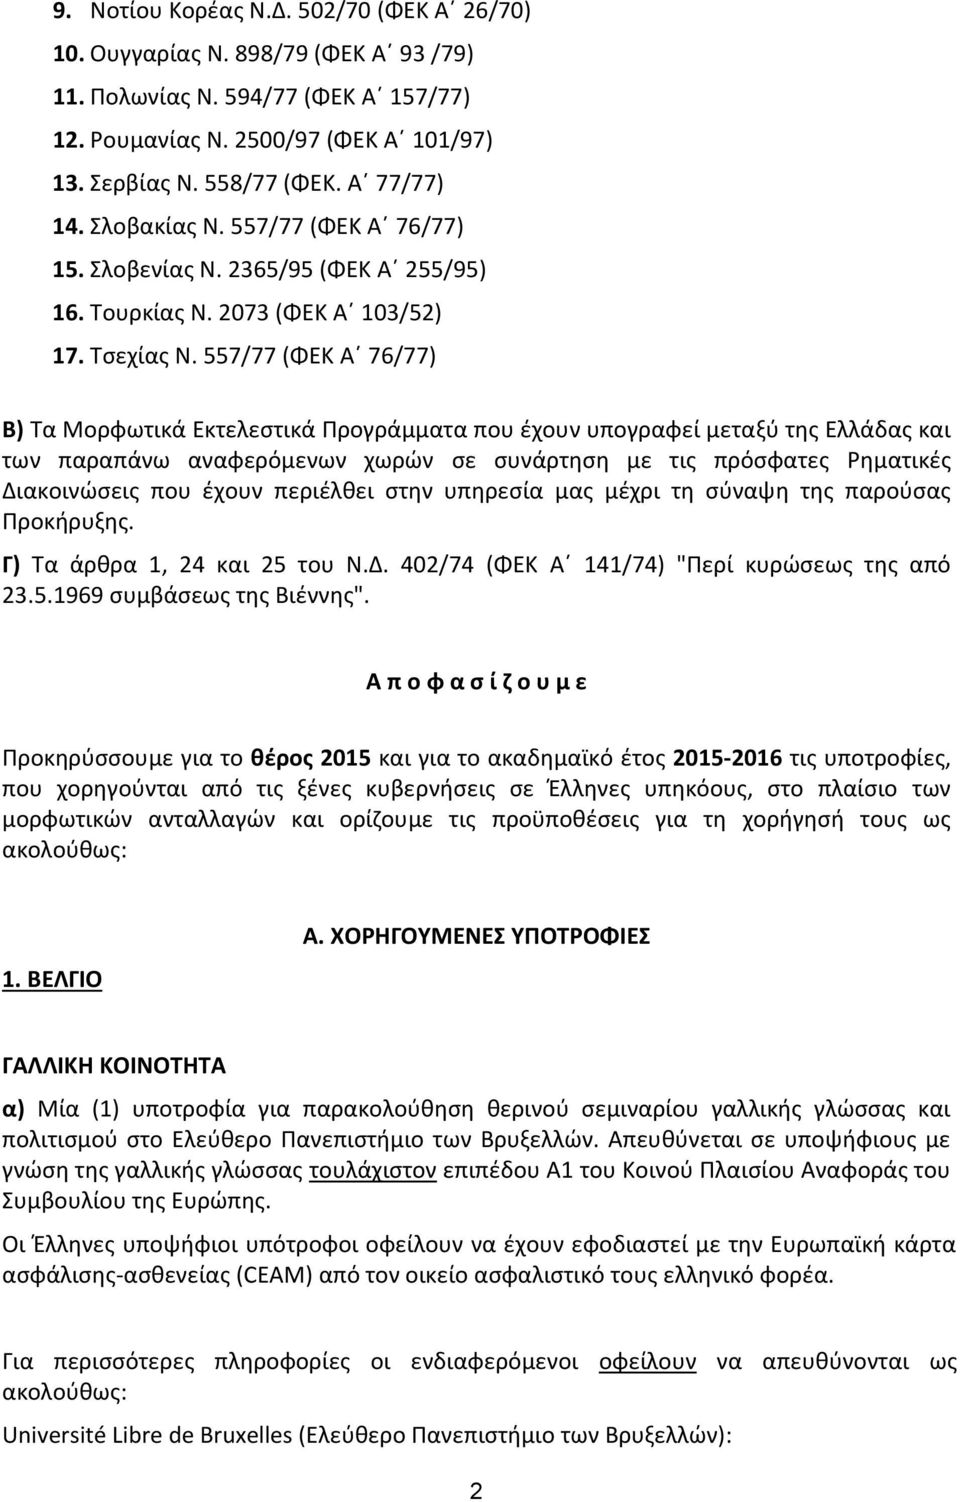 557/77 (ΦΕΚ Α 76/77) Β) Τα Μορφωτικά Εκτελεστικά Προγράμματα που έχουν υπογραφεί μεταξύ της Ελλάδας και των παραπάνω αναφερόμενων χωρών σε συνάρτηση με τις πρόσφατες Ρηματικές Διακοινώσεις που έχουν